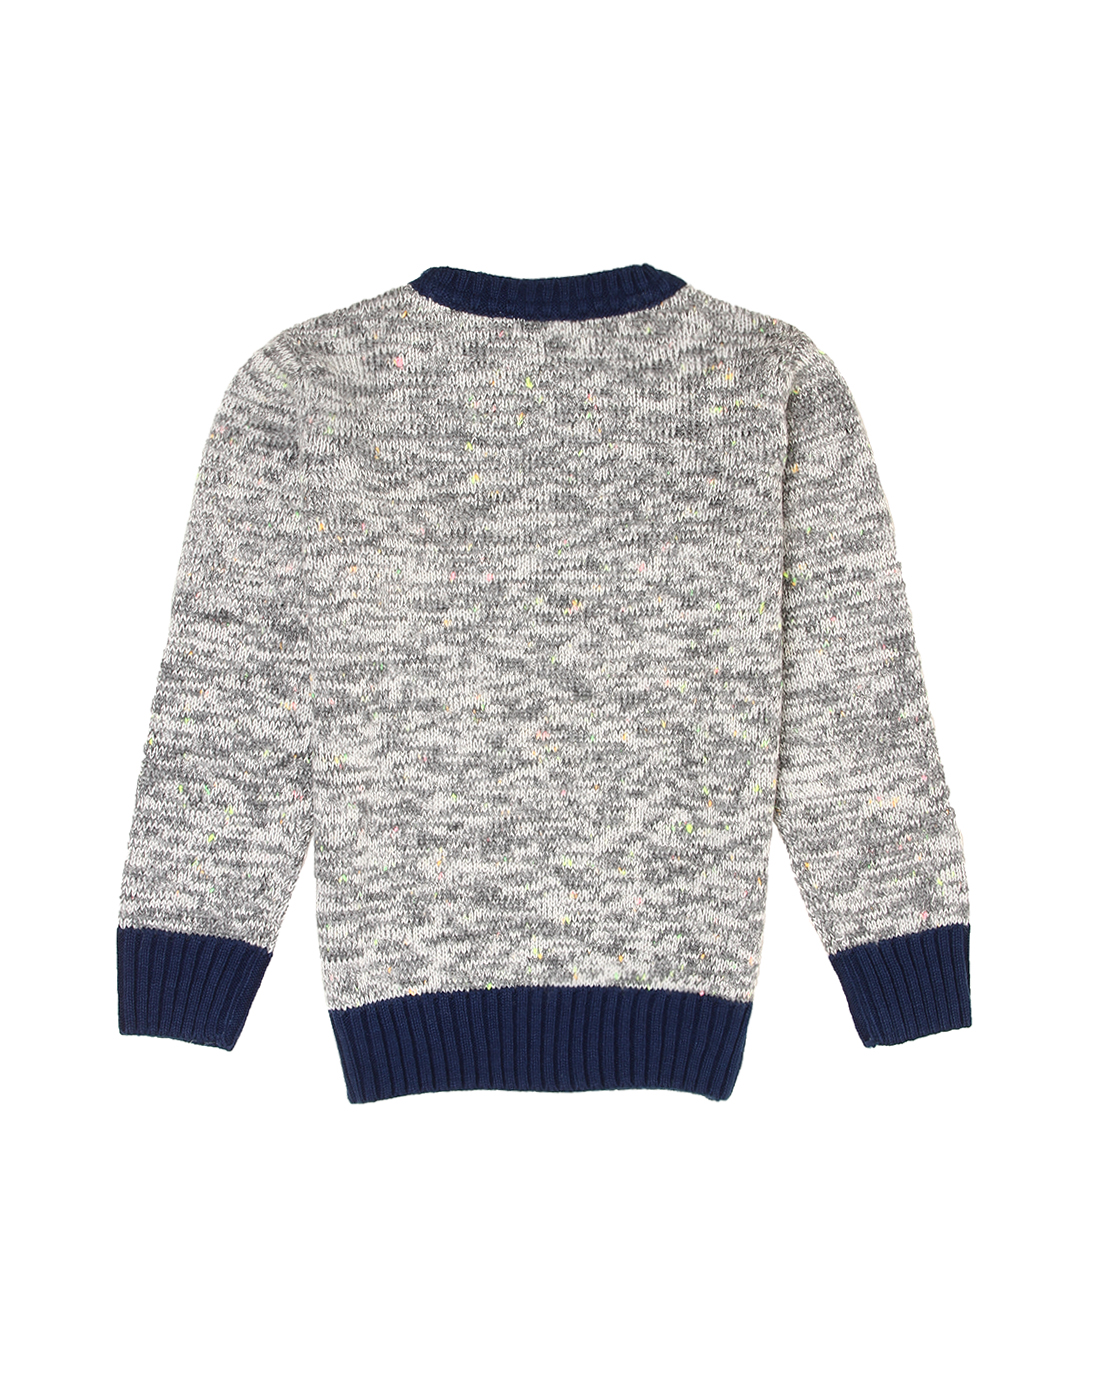 Wingsfield Boys Grey Sweater